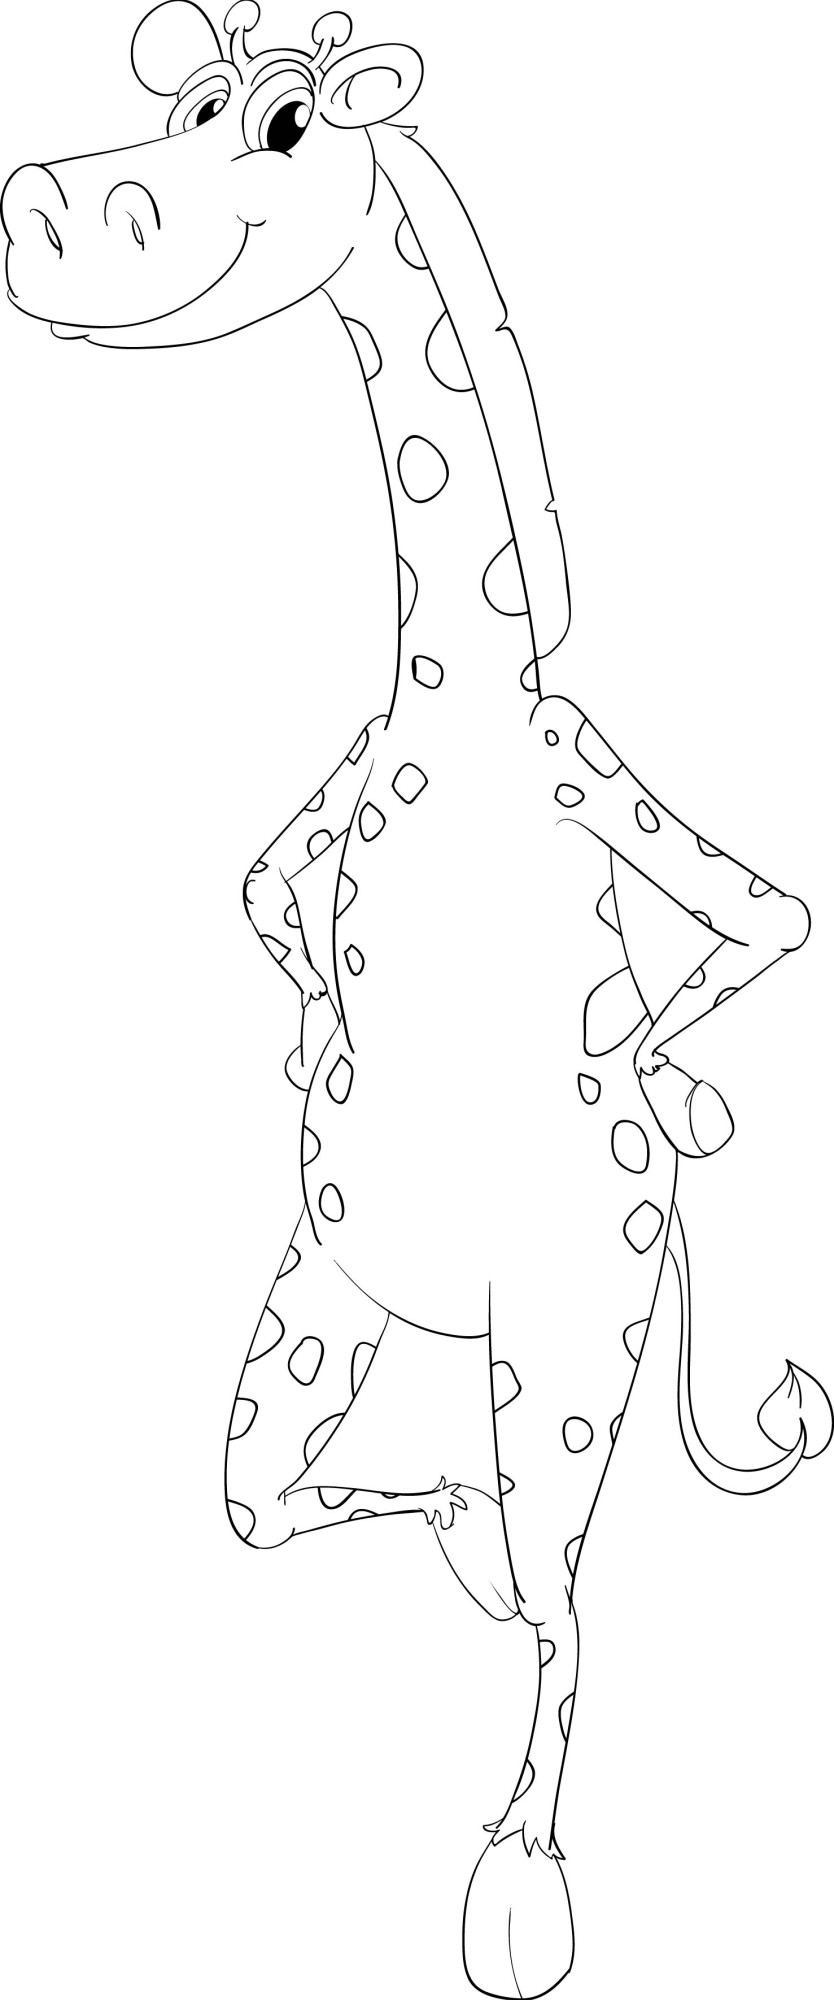 Раскраска для детей: игривый жираф из мультика стоит на двух ногах